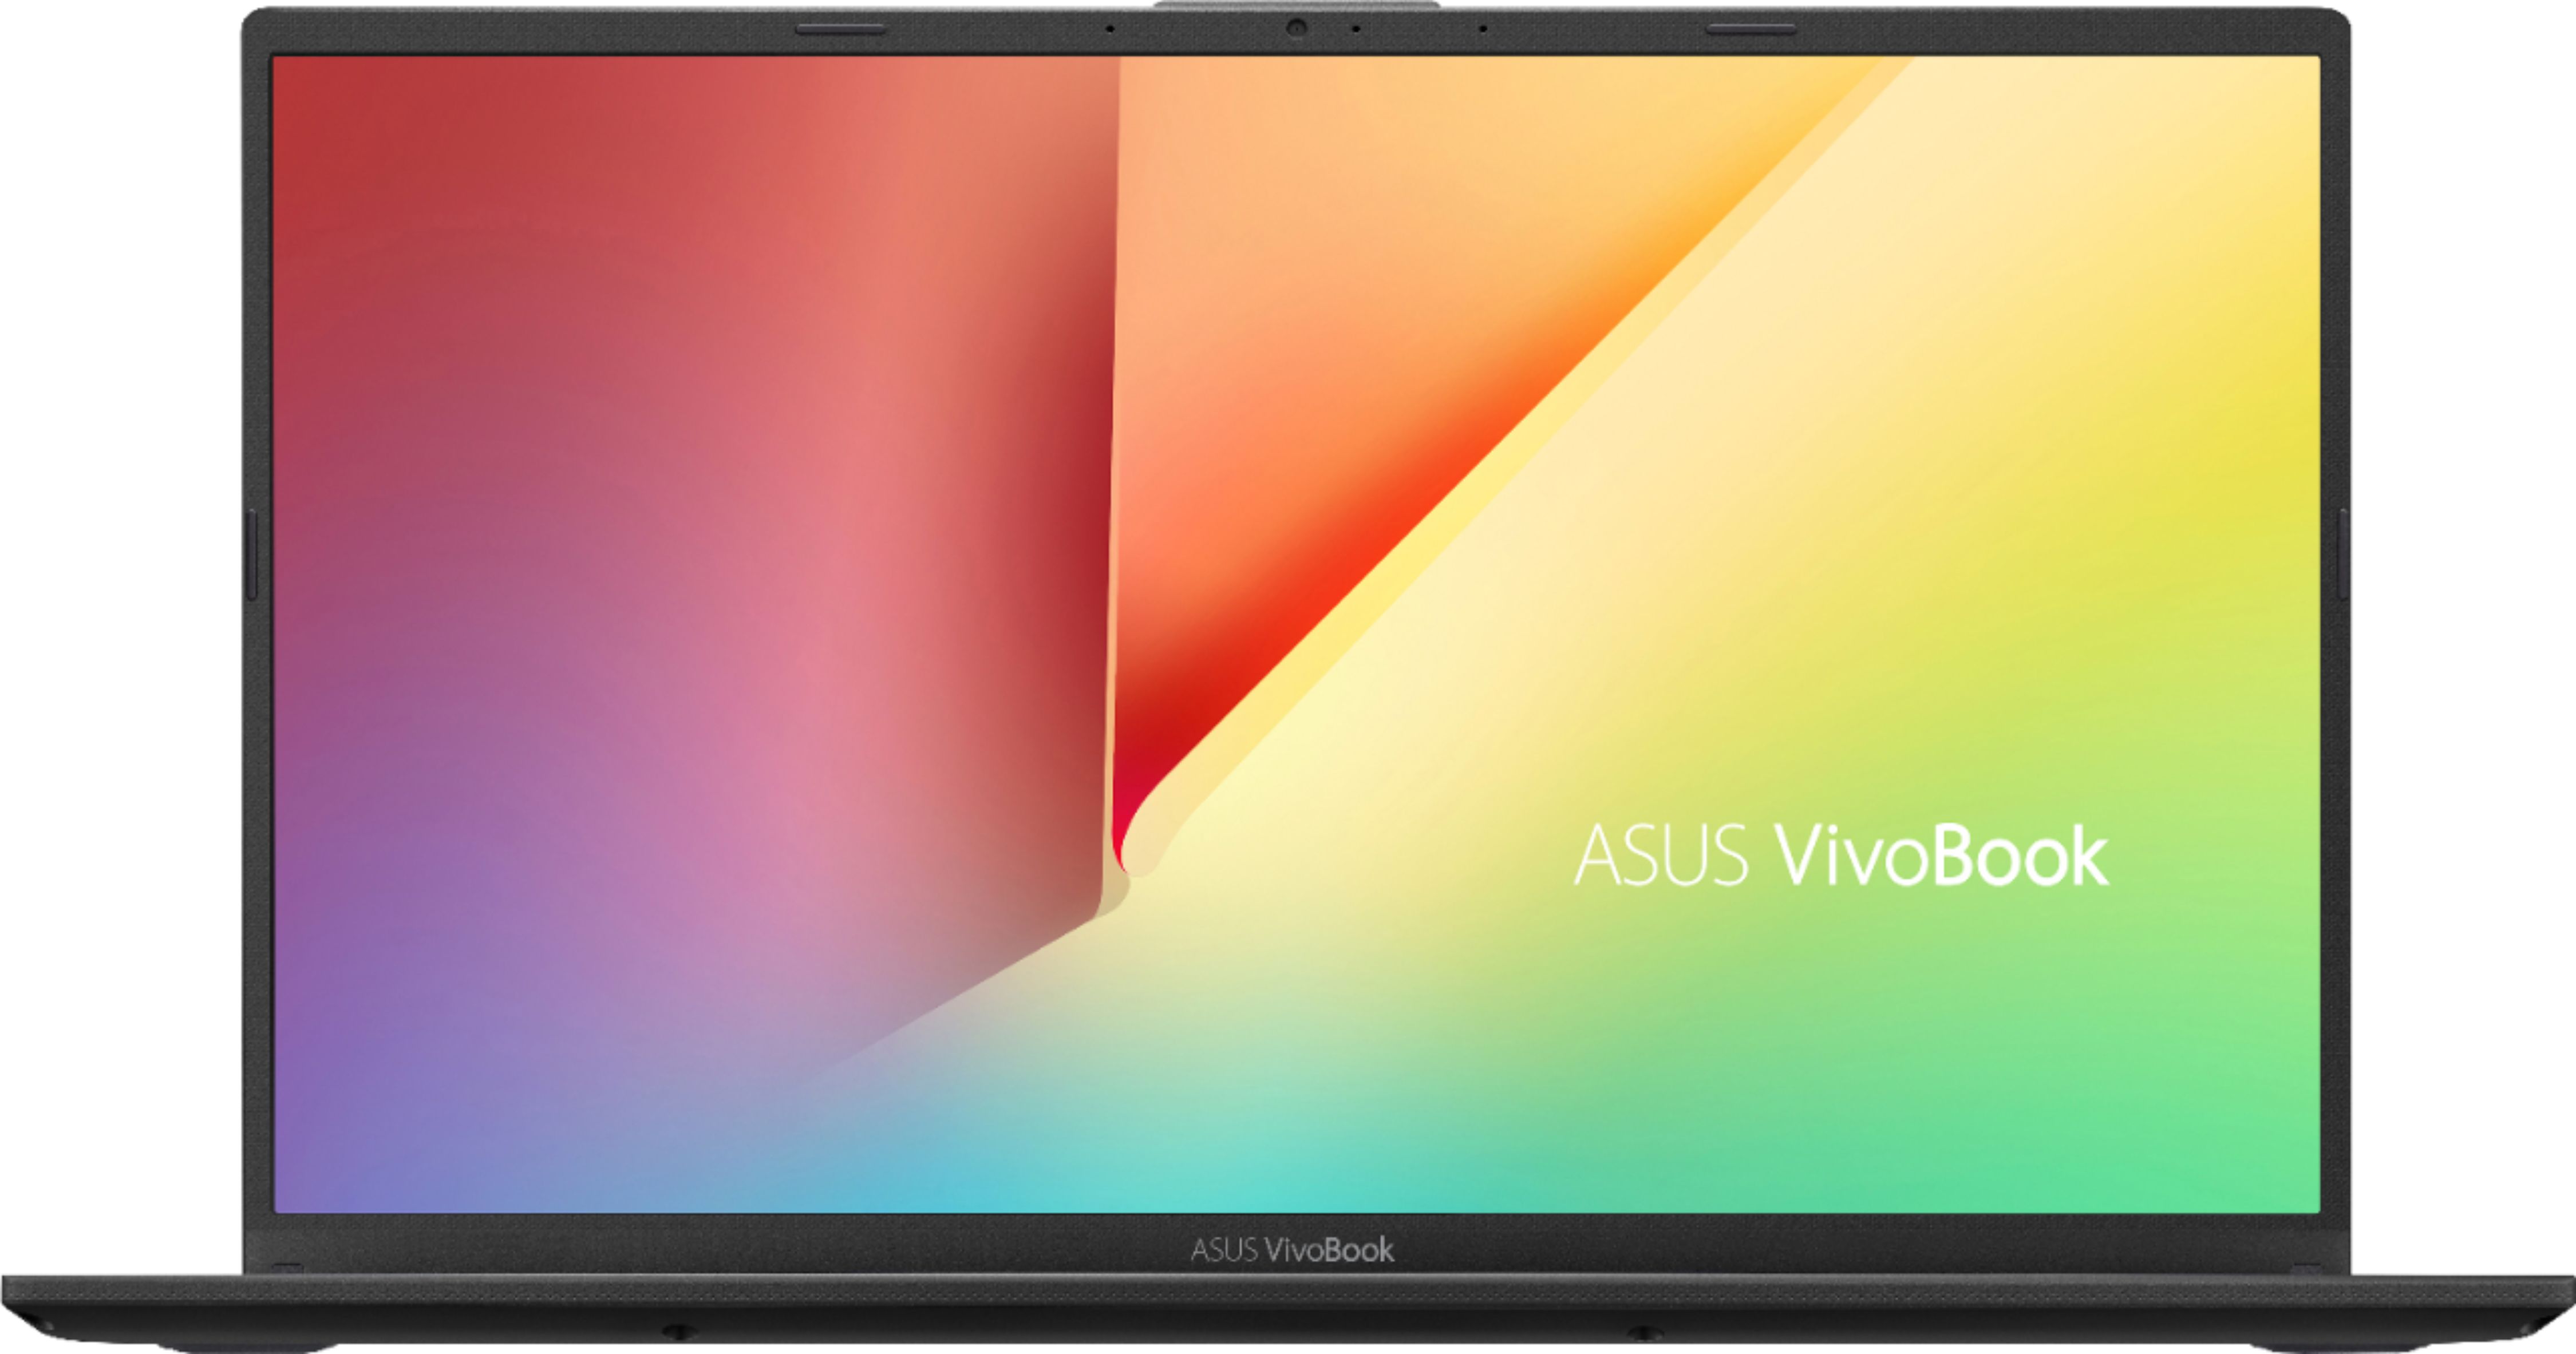 Laptop ASUS Vivobook X512JA Core i7-1065G7 / RAM 8GB / SSD 256GB + 1TB HDD / Full HD Touch / Win 10 - Hàng Nhập Khẩu Mỹ